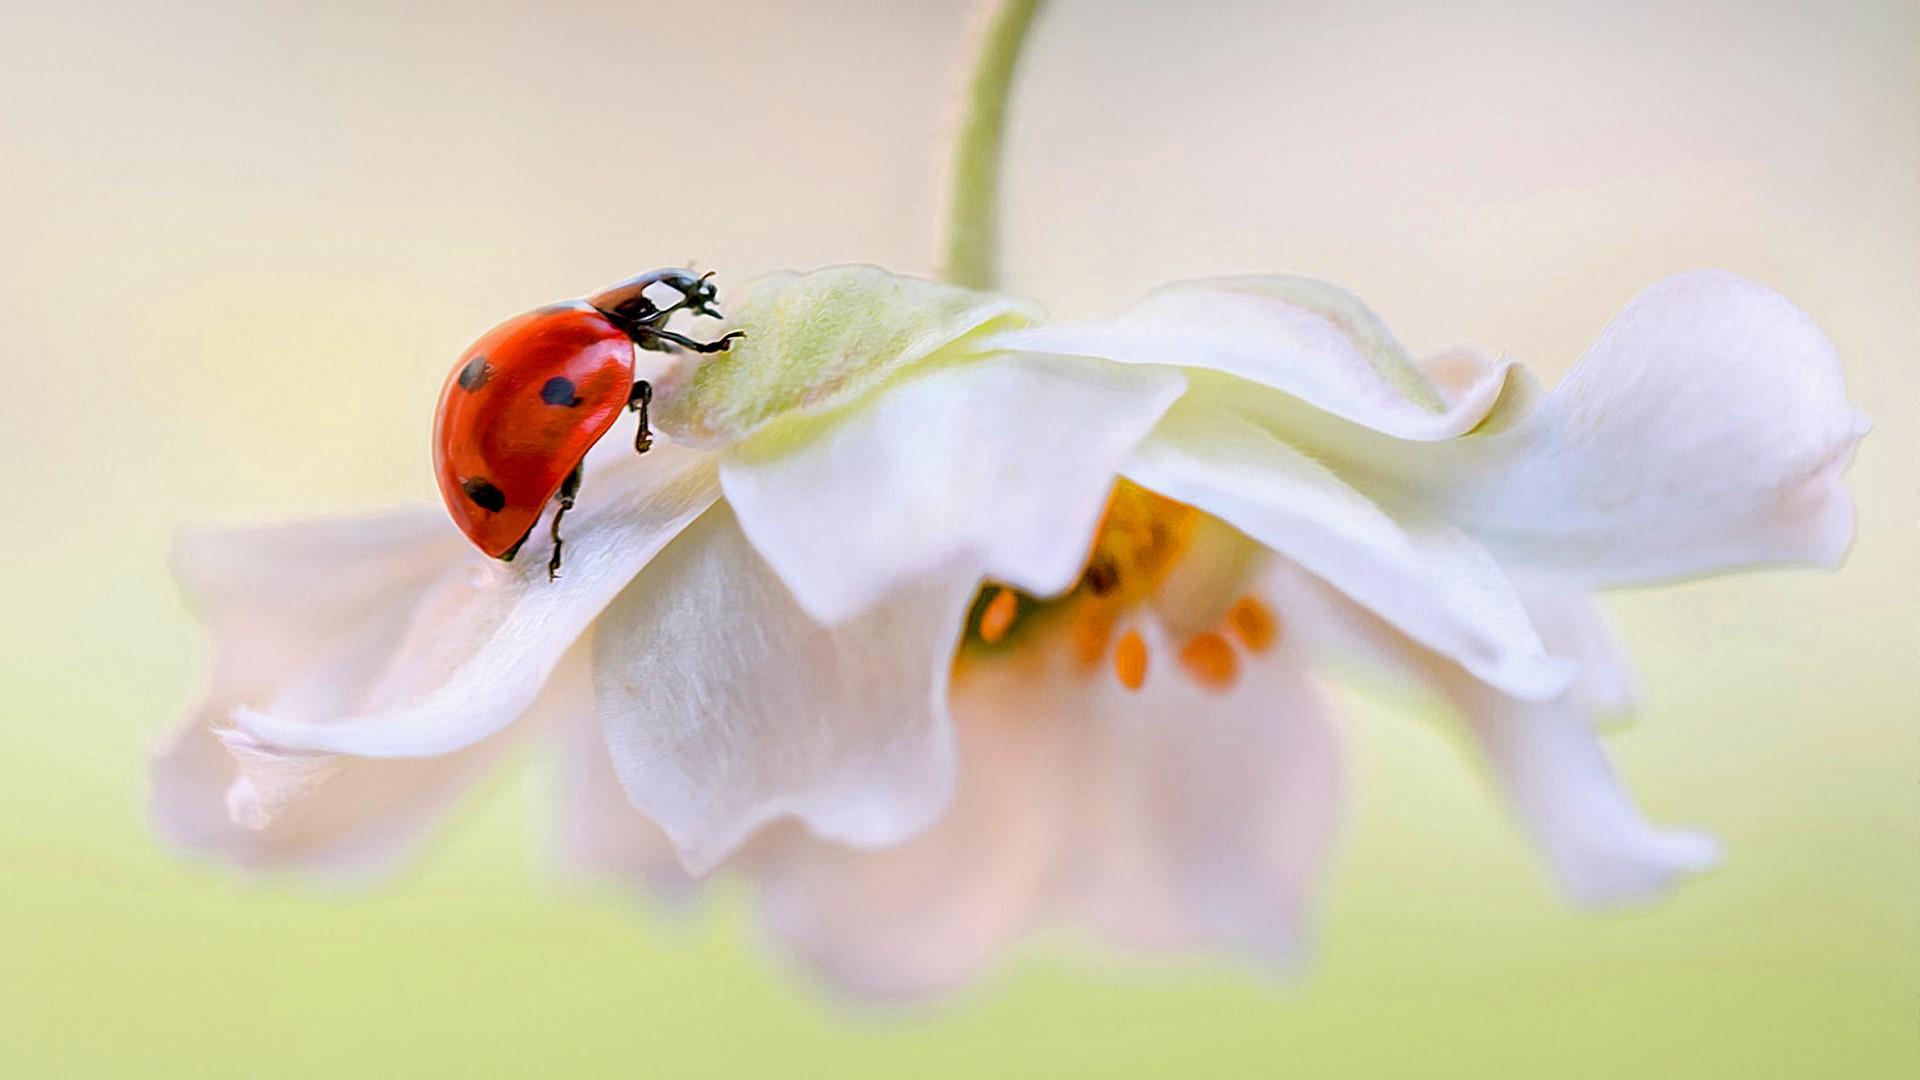 Ladybug On White Flower Wallpaper | Wallpaper Studio 10 | Tens of ...